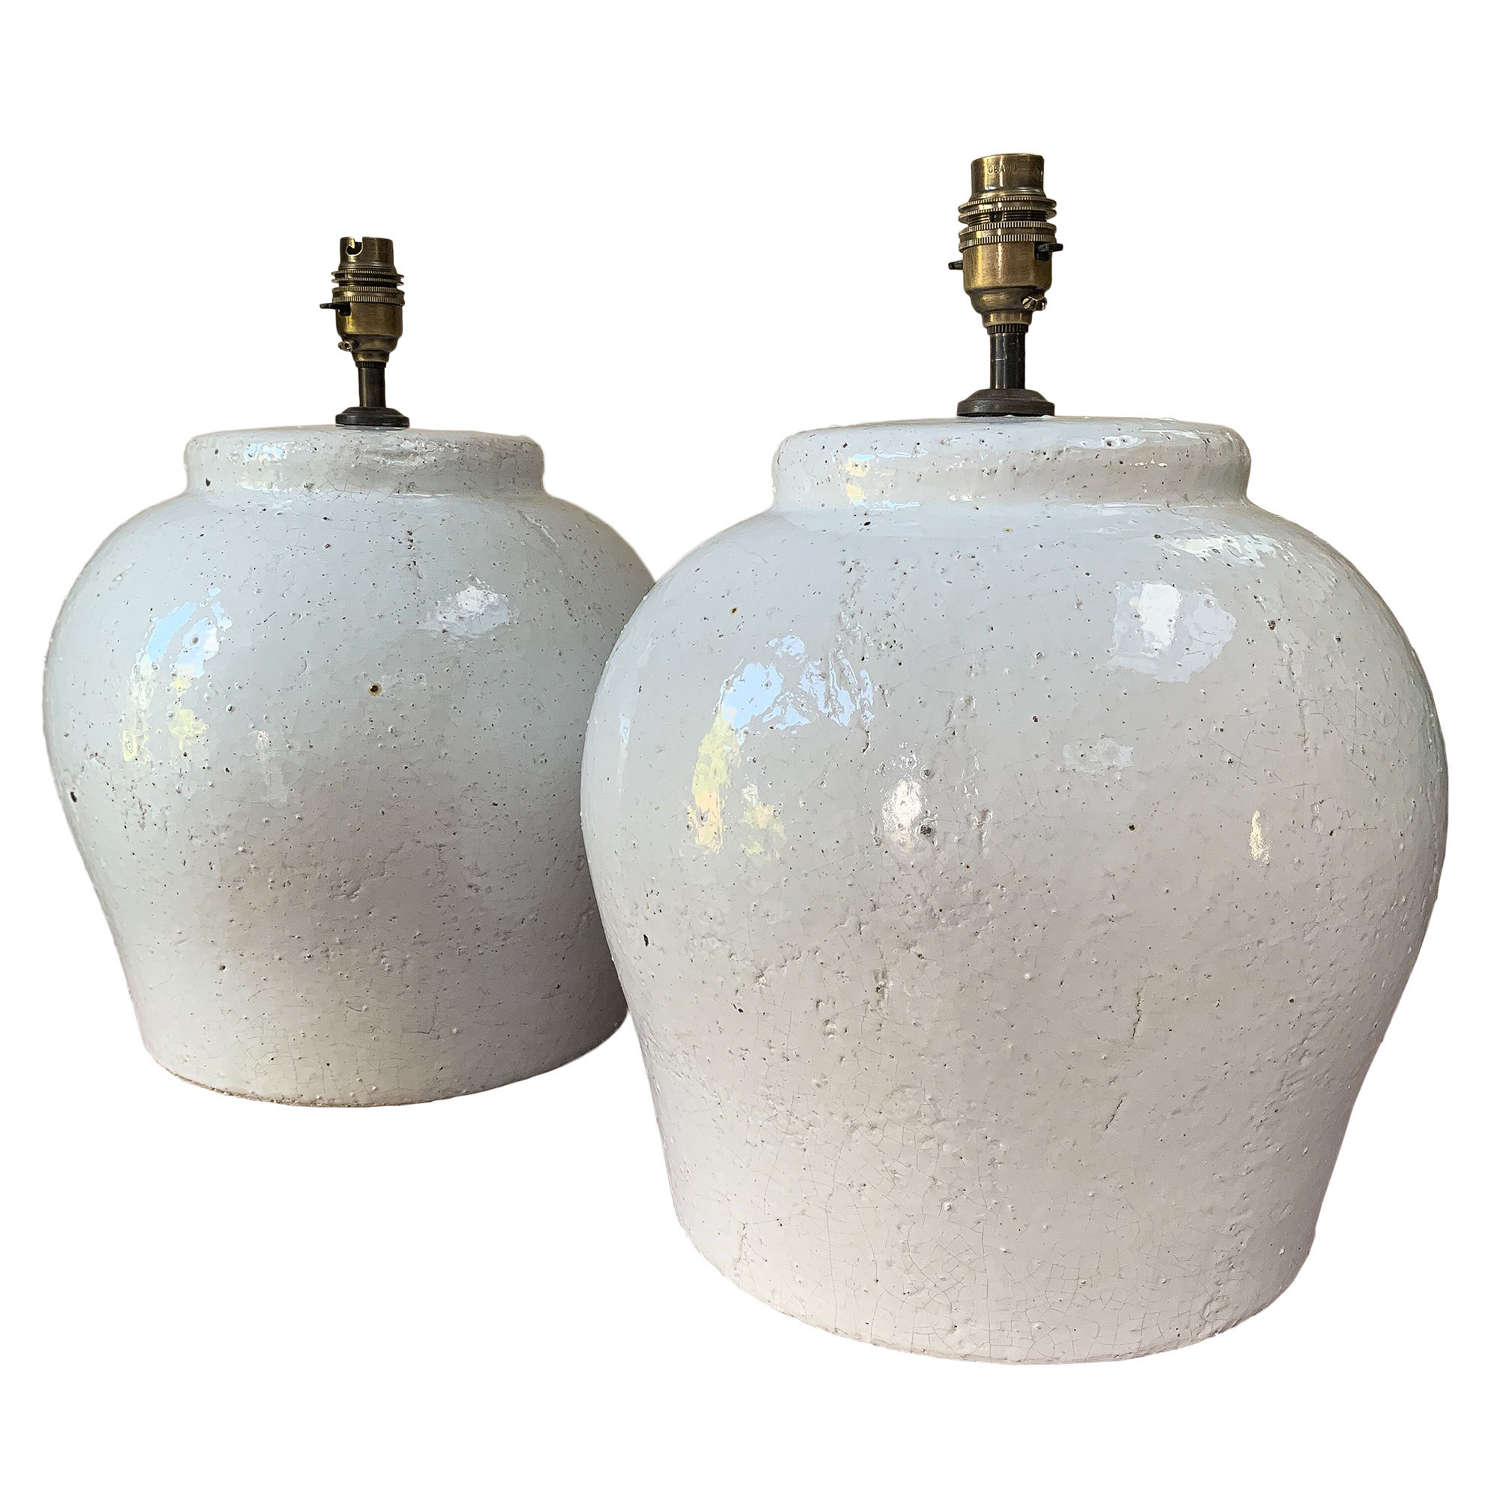 Pair of glazed terracotta lamps